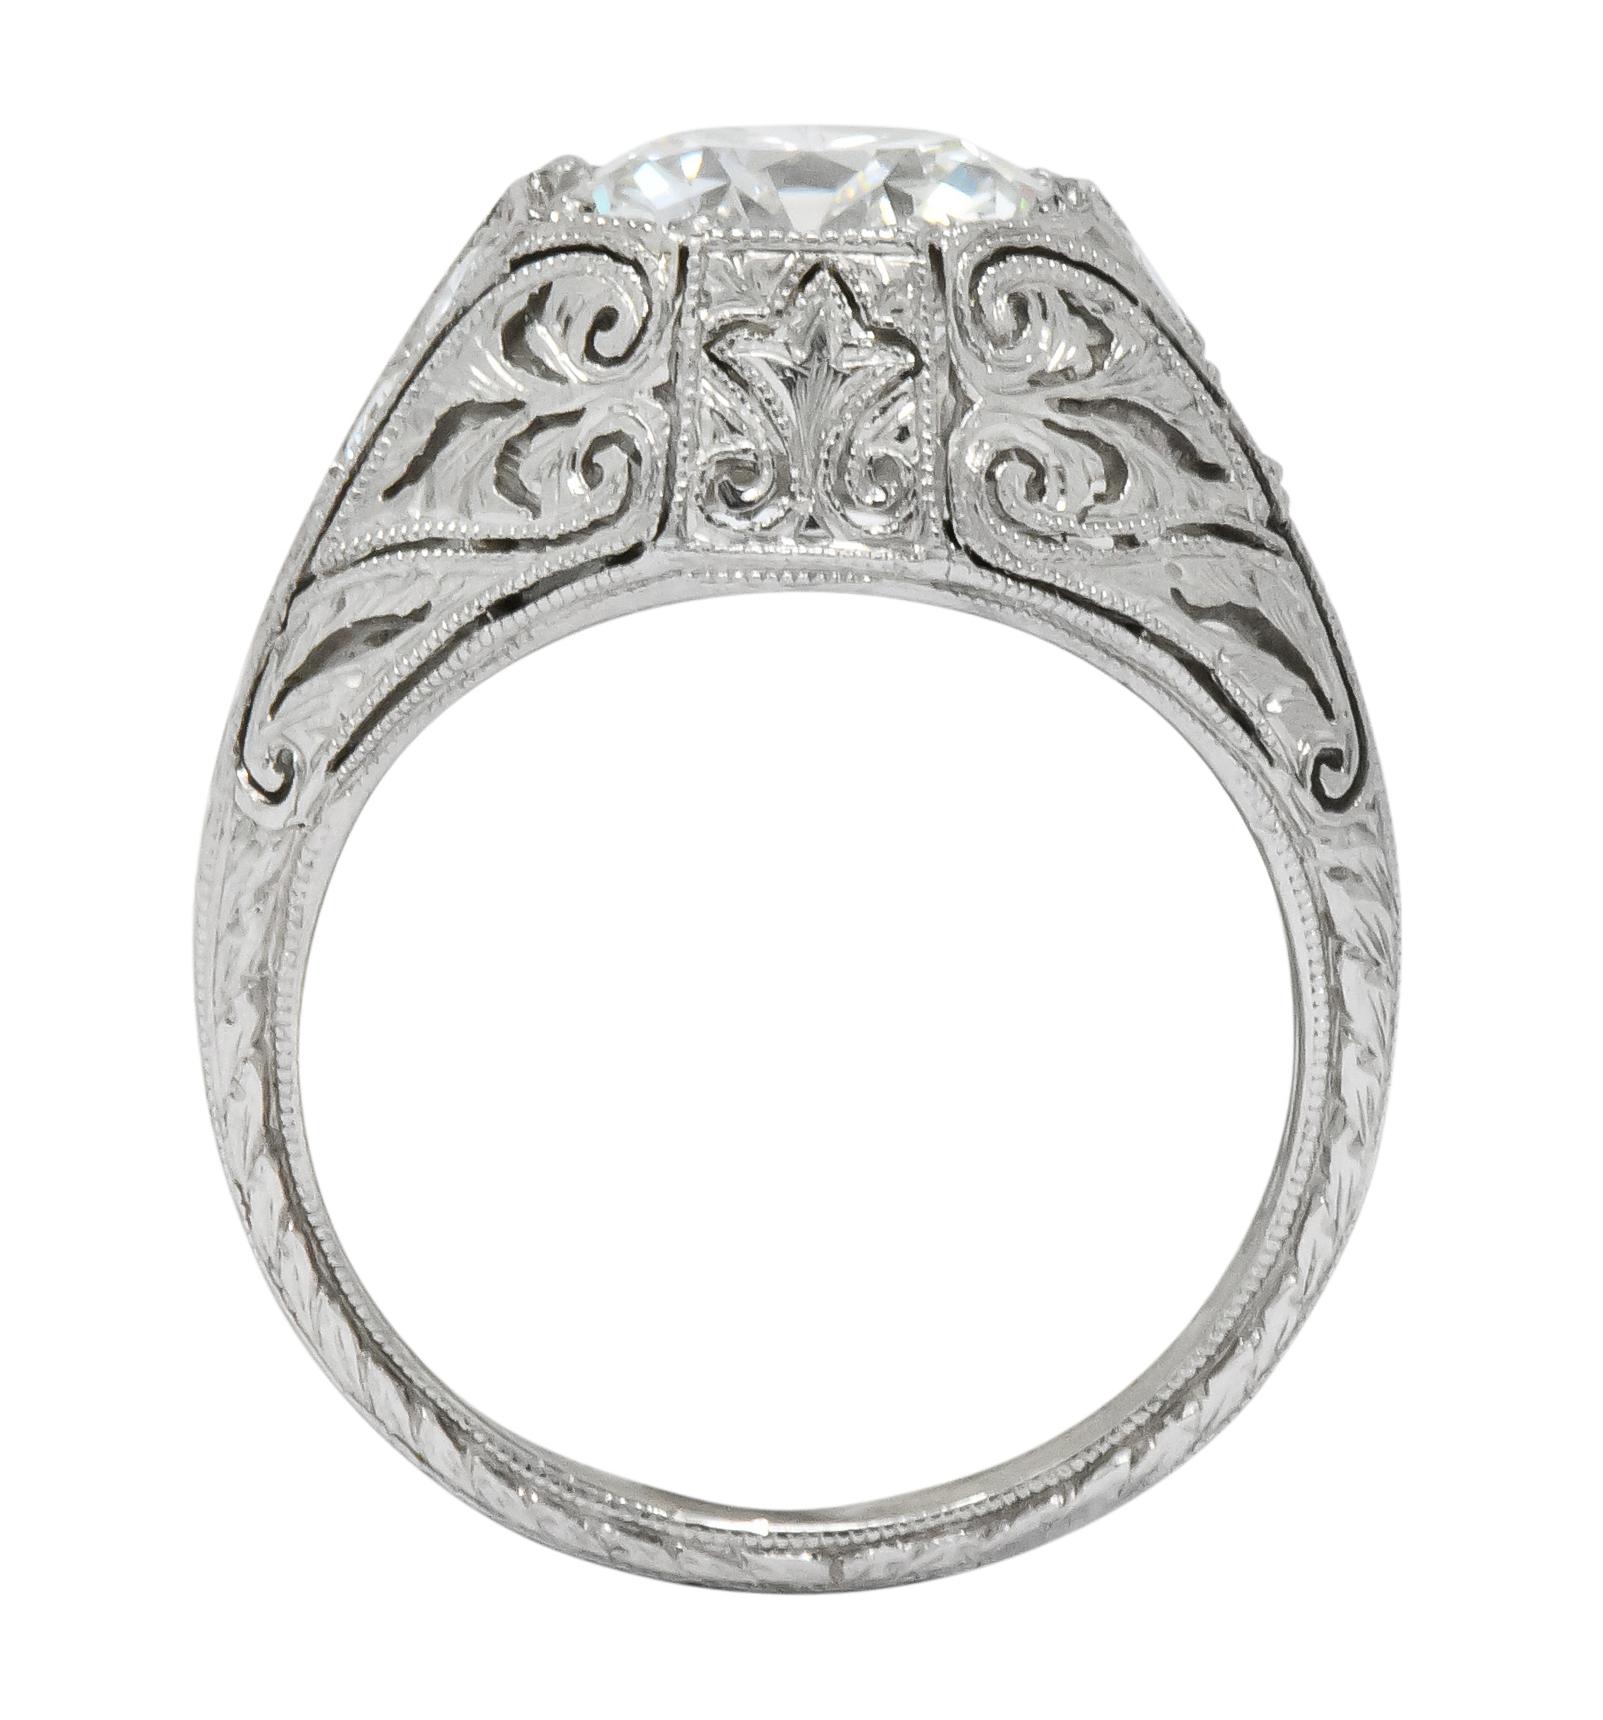 Round Cut Exquisite Edwardian 2.55 Carat Diamond Platinum Engagement Ring GIA